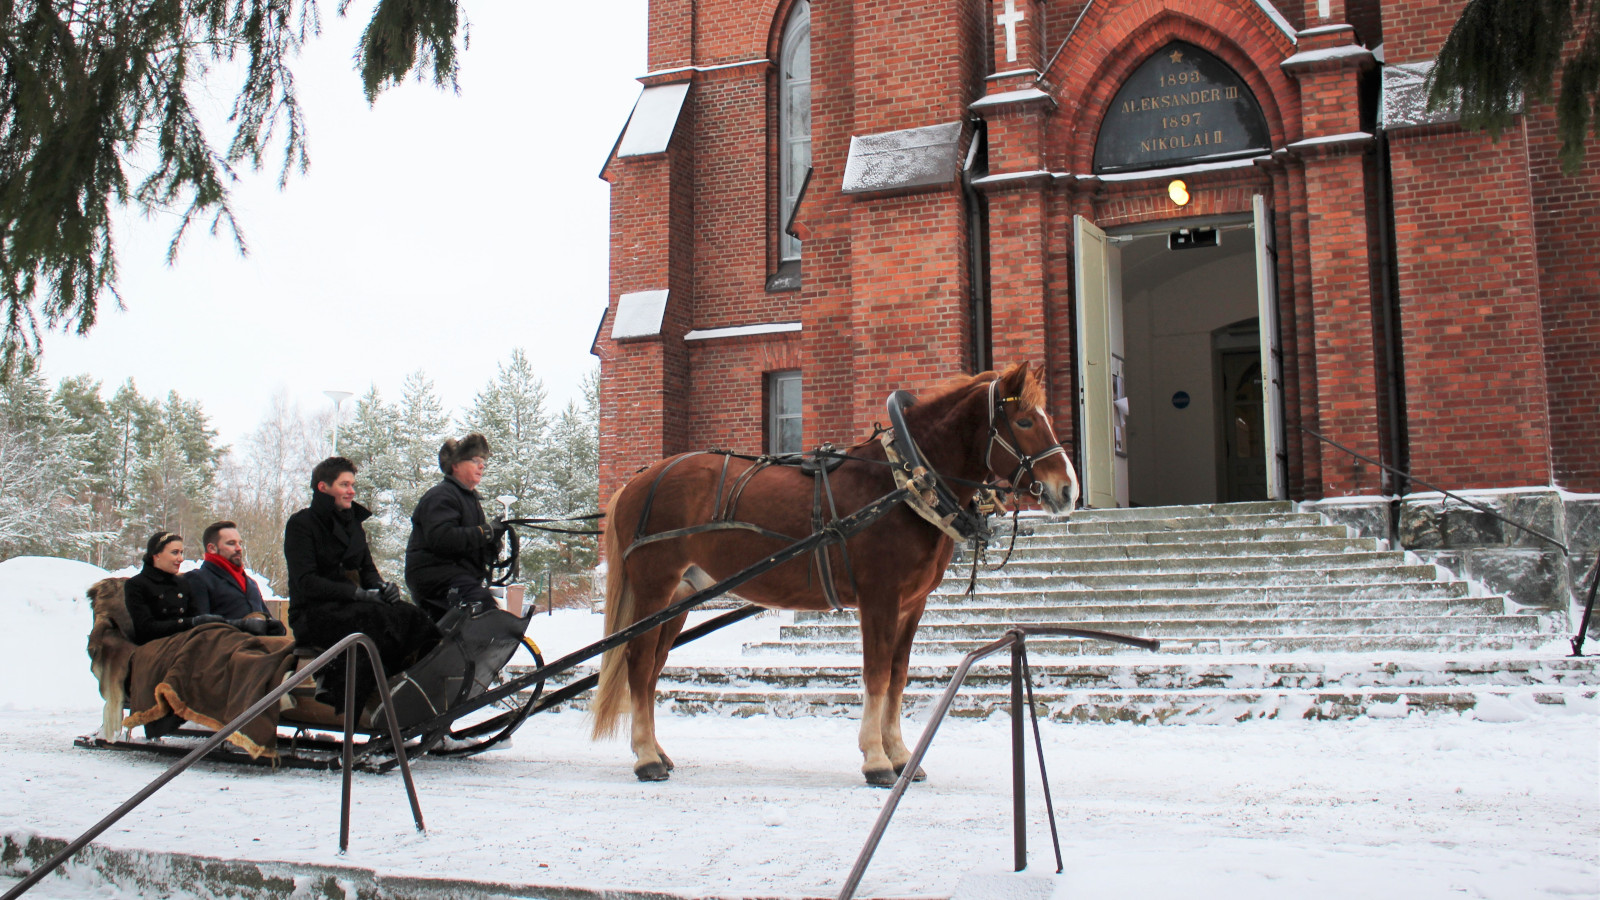 Kuvassa on hevosen vetämässä reessä Jussi Merikanto, Jussi Makkonen ja Nazig Azezian Nurmeksen punatiilisen kirkon edessä.